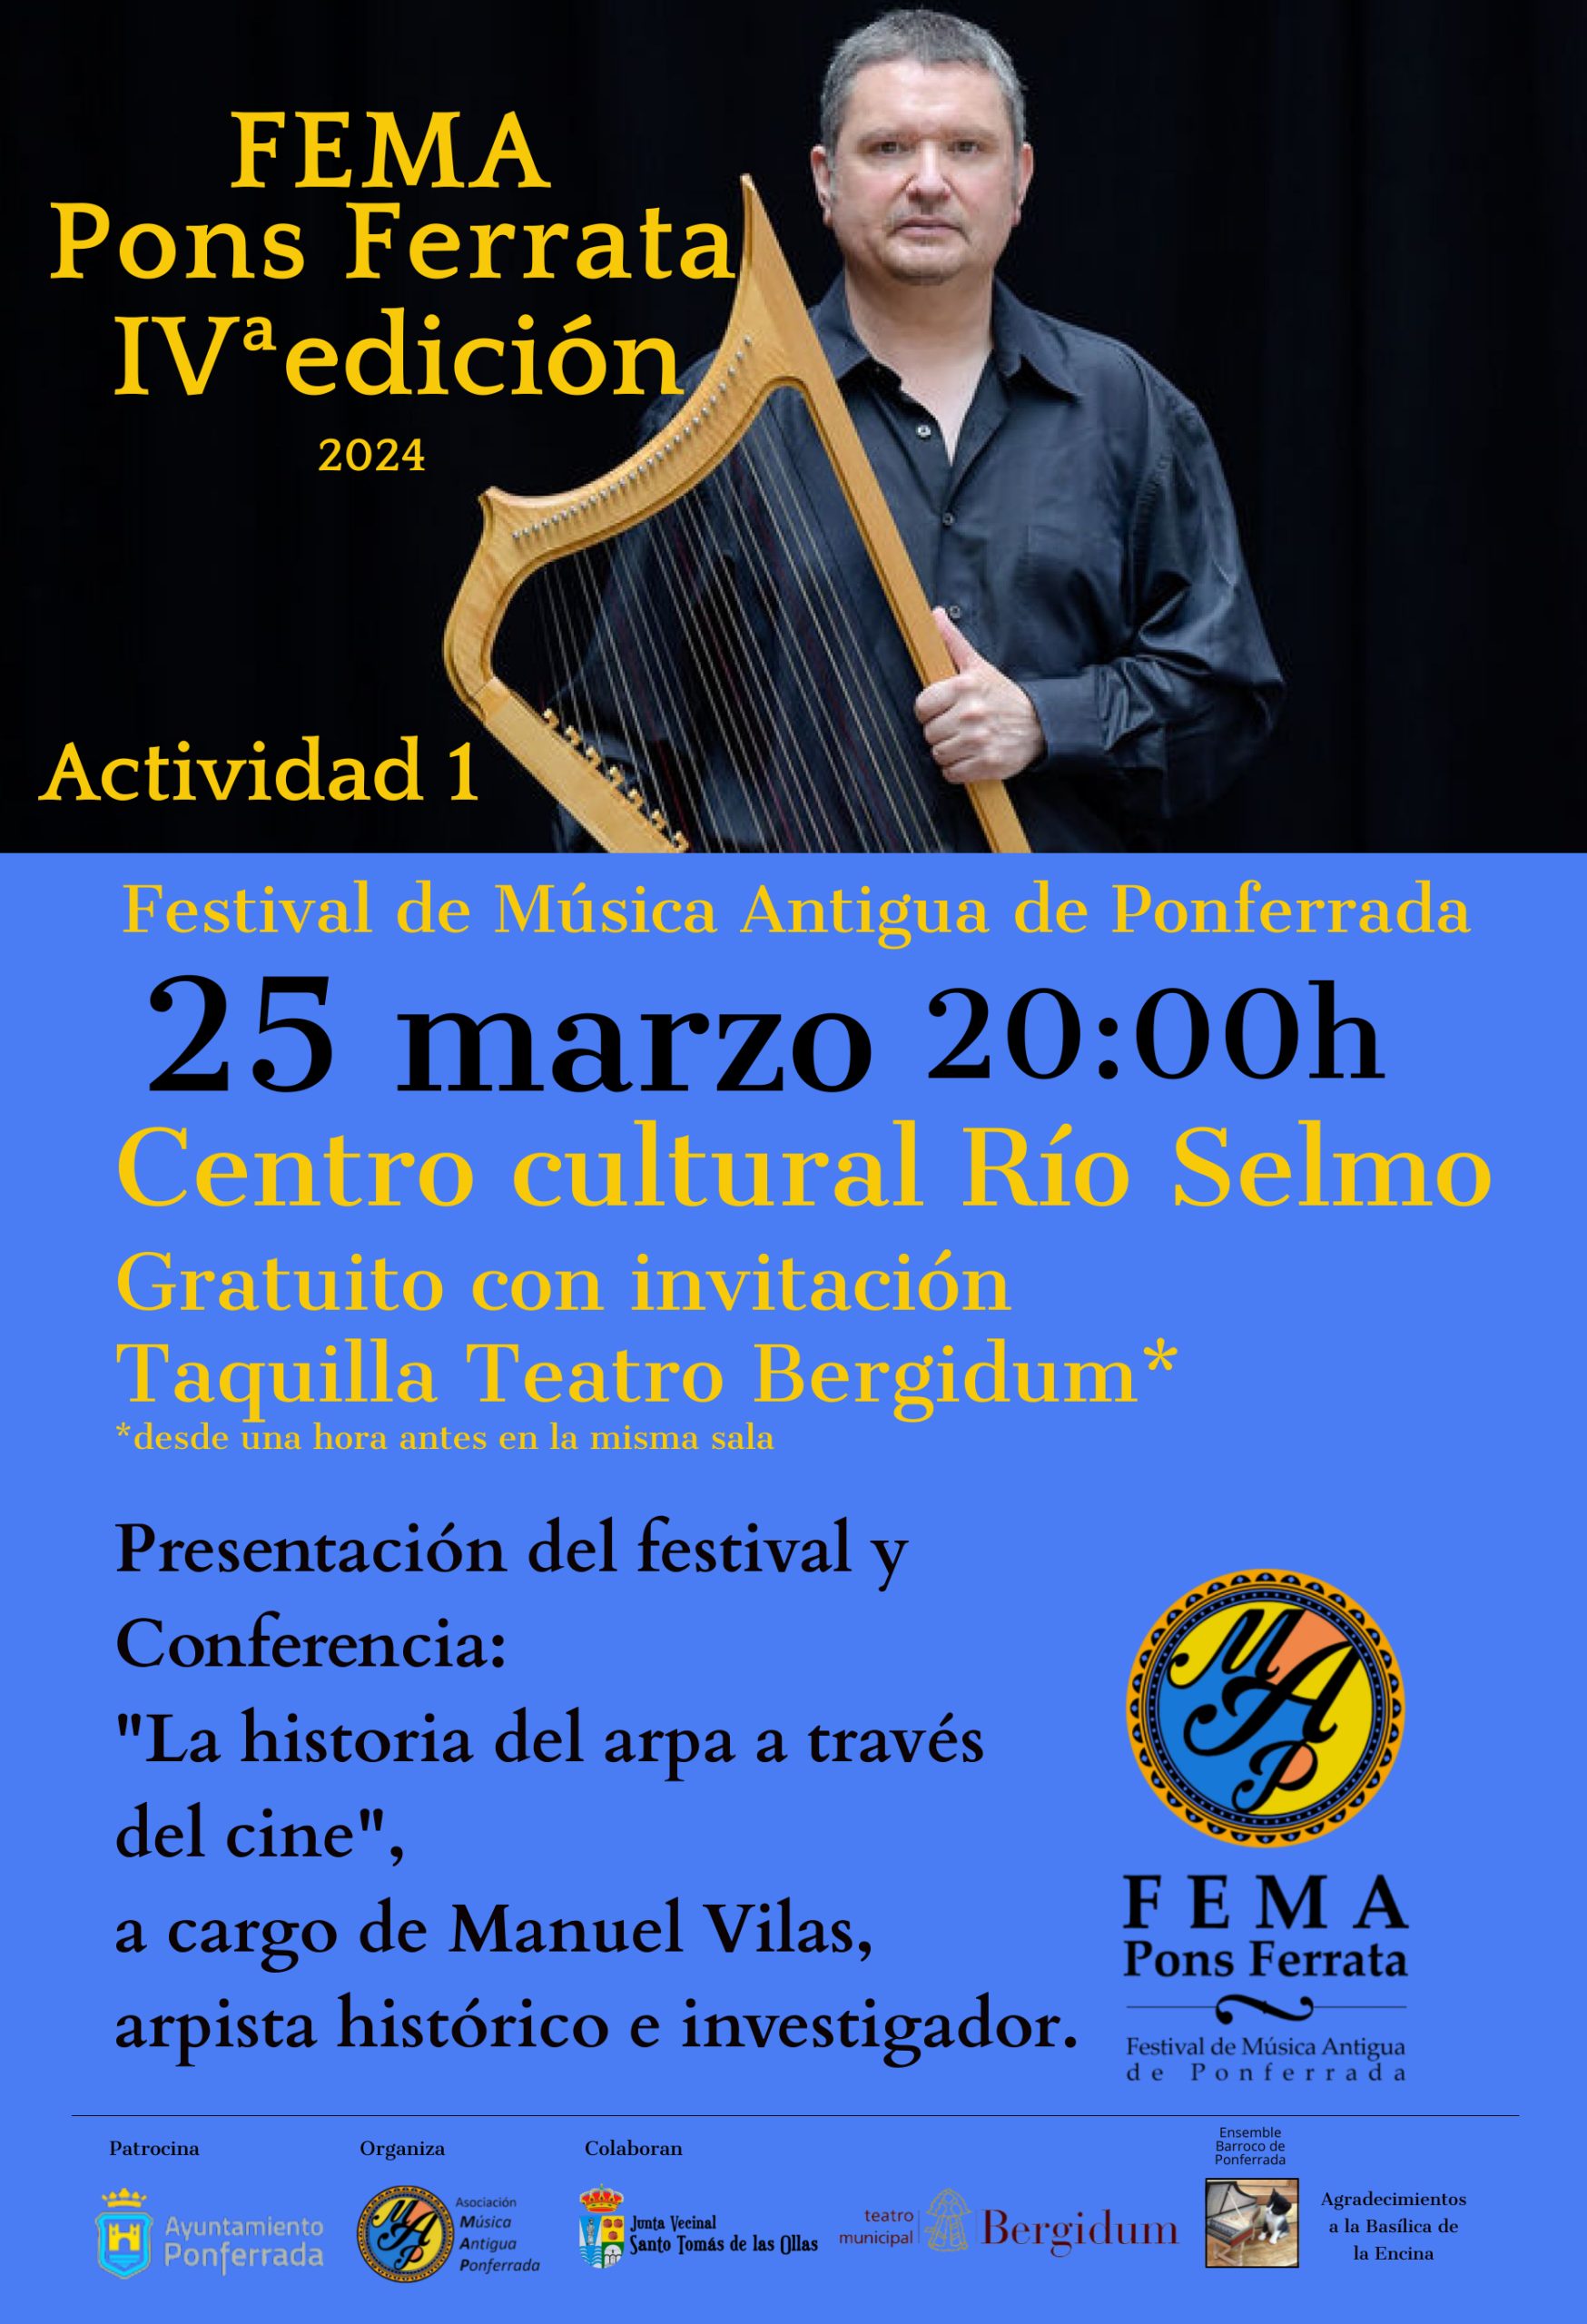 4ª edición del Festival de Música Antigua de Ponferrada “FEMA Pons Ferrata” se celebra del 25 al 27 de marzo 2